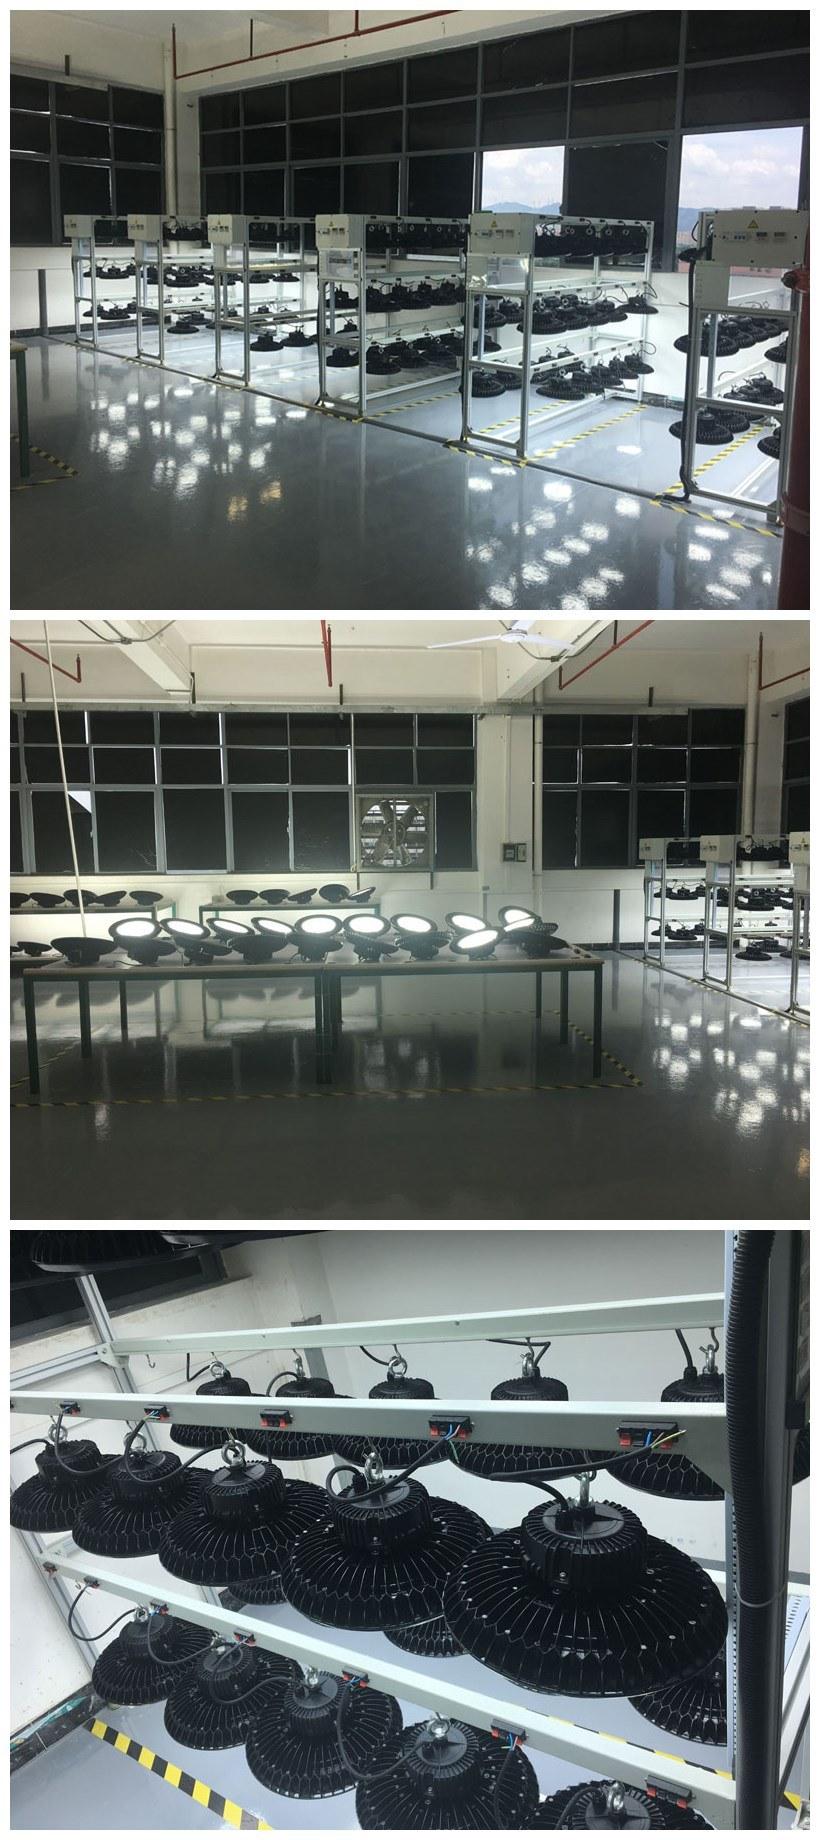 300W LED Warehouse Highbay Light Indoor Lighting Fixture IP65 Waterproof